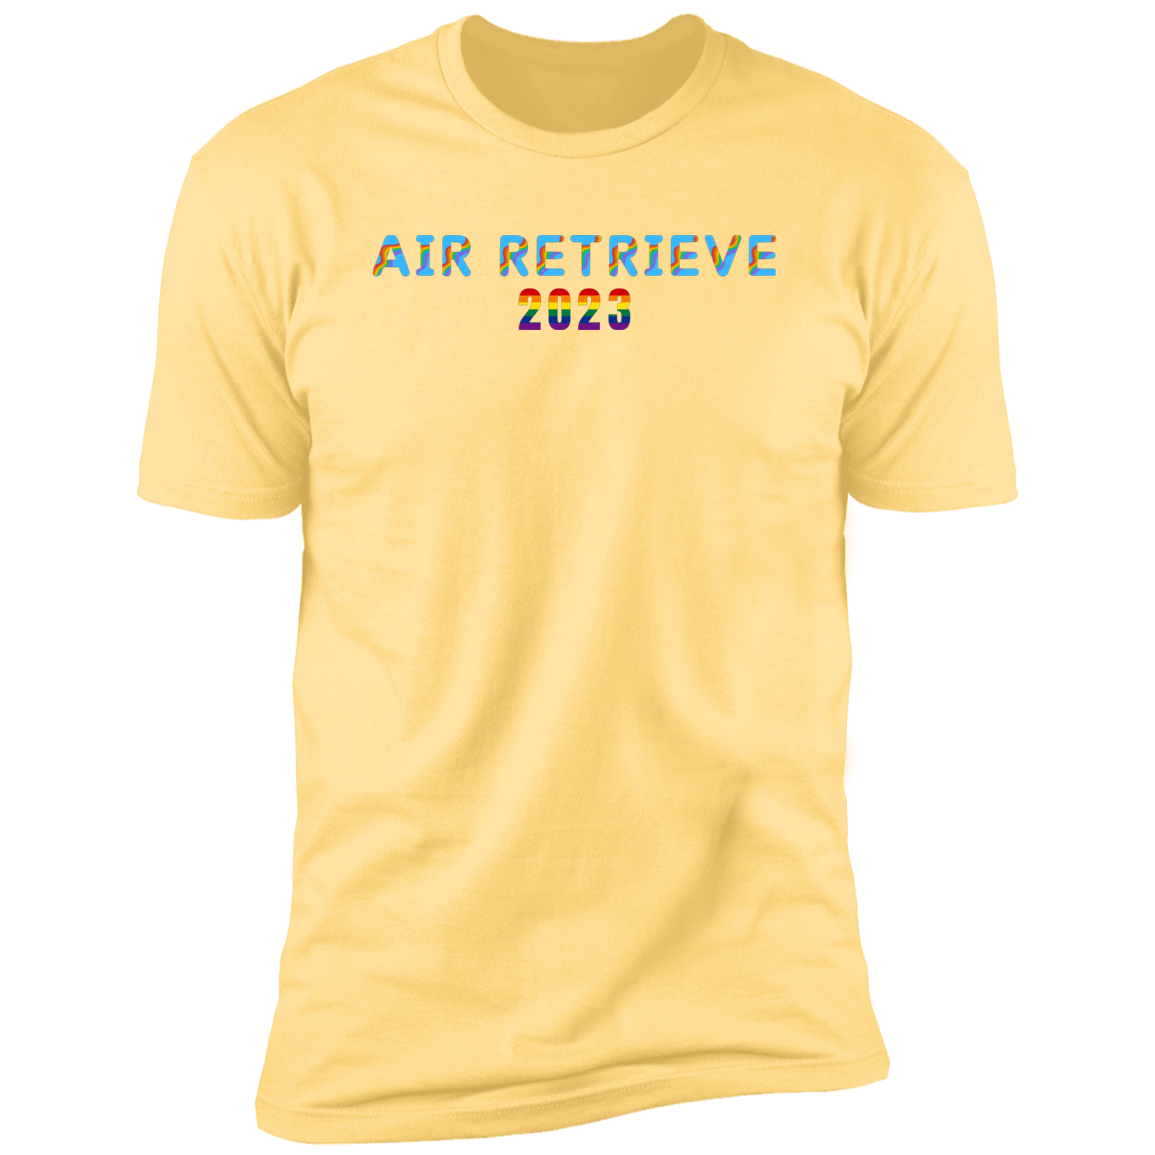 Air Retrieve 2023 Pride Dock diving t-shirt, dog pride air retrieve dock diving shirt for humans, in banana cream